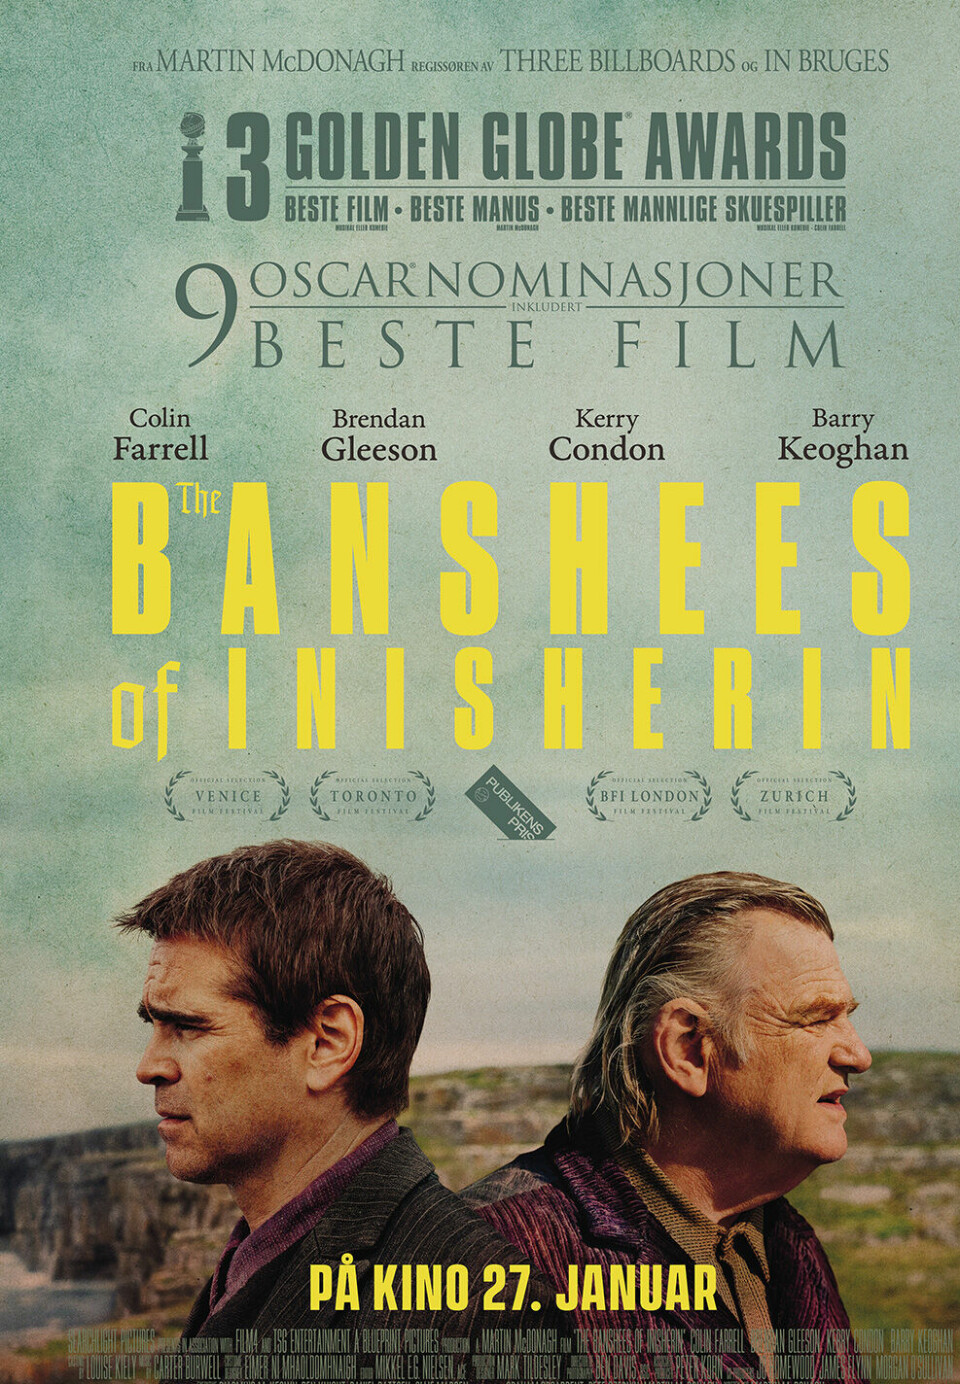 Filmplakat for 'Banshees of inisherin'